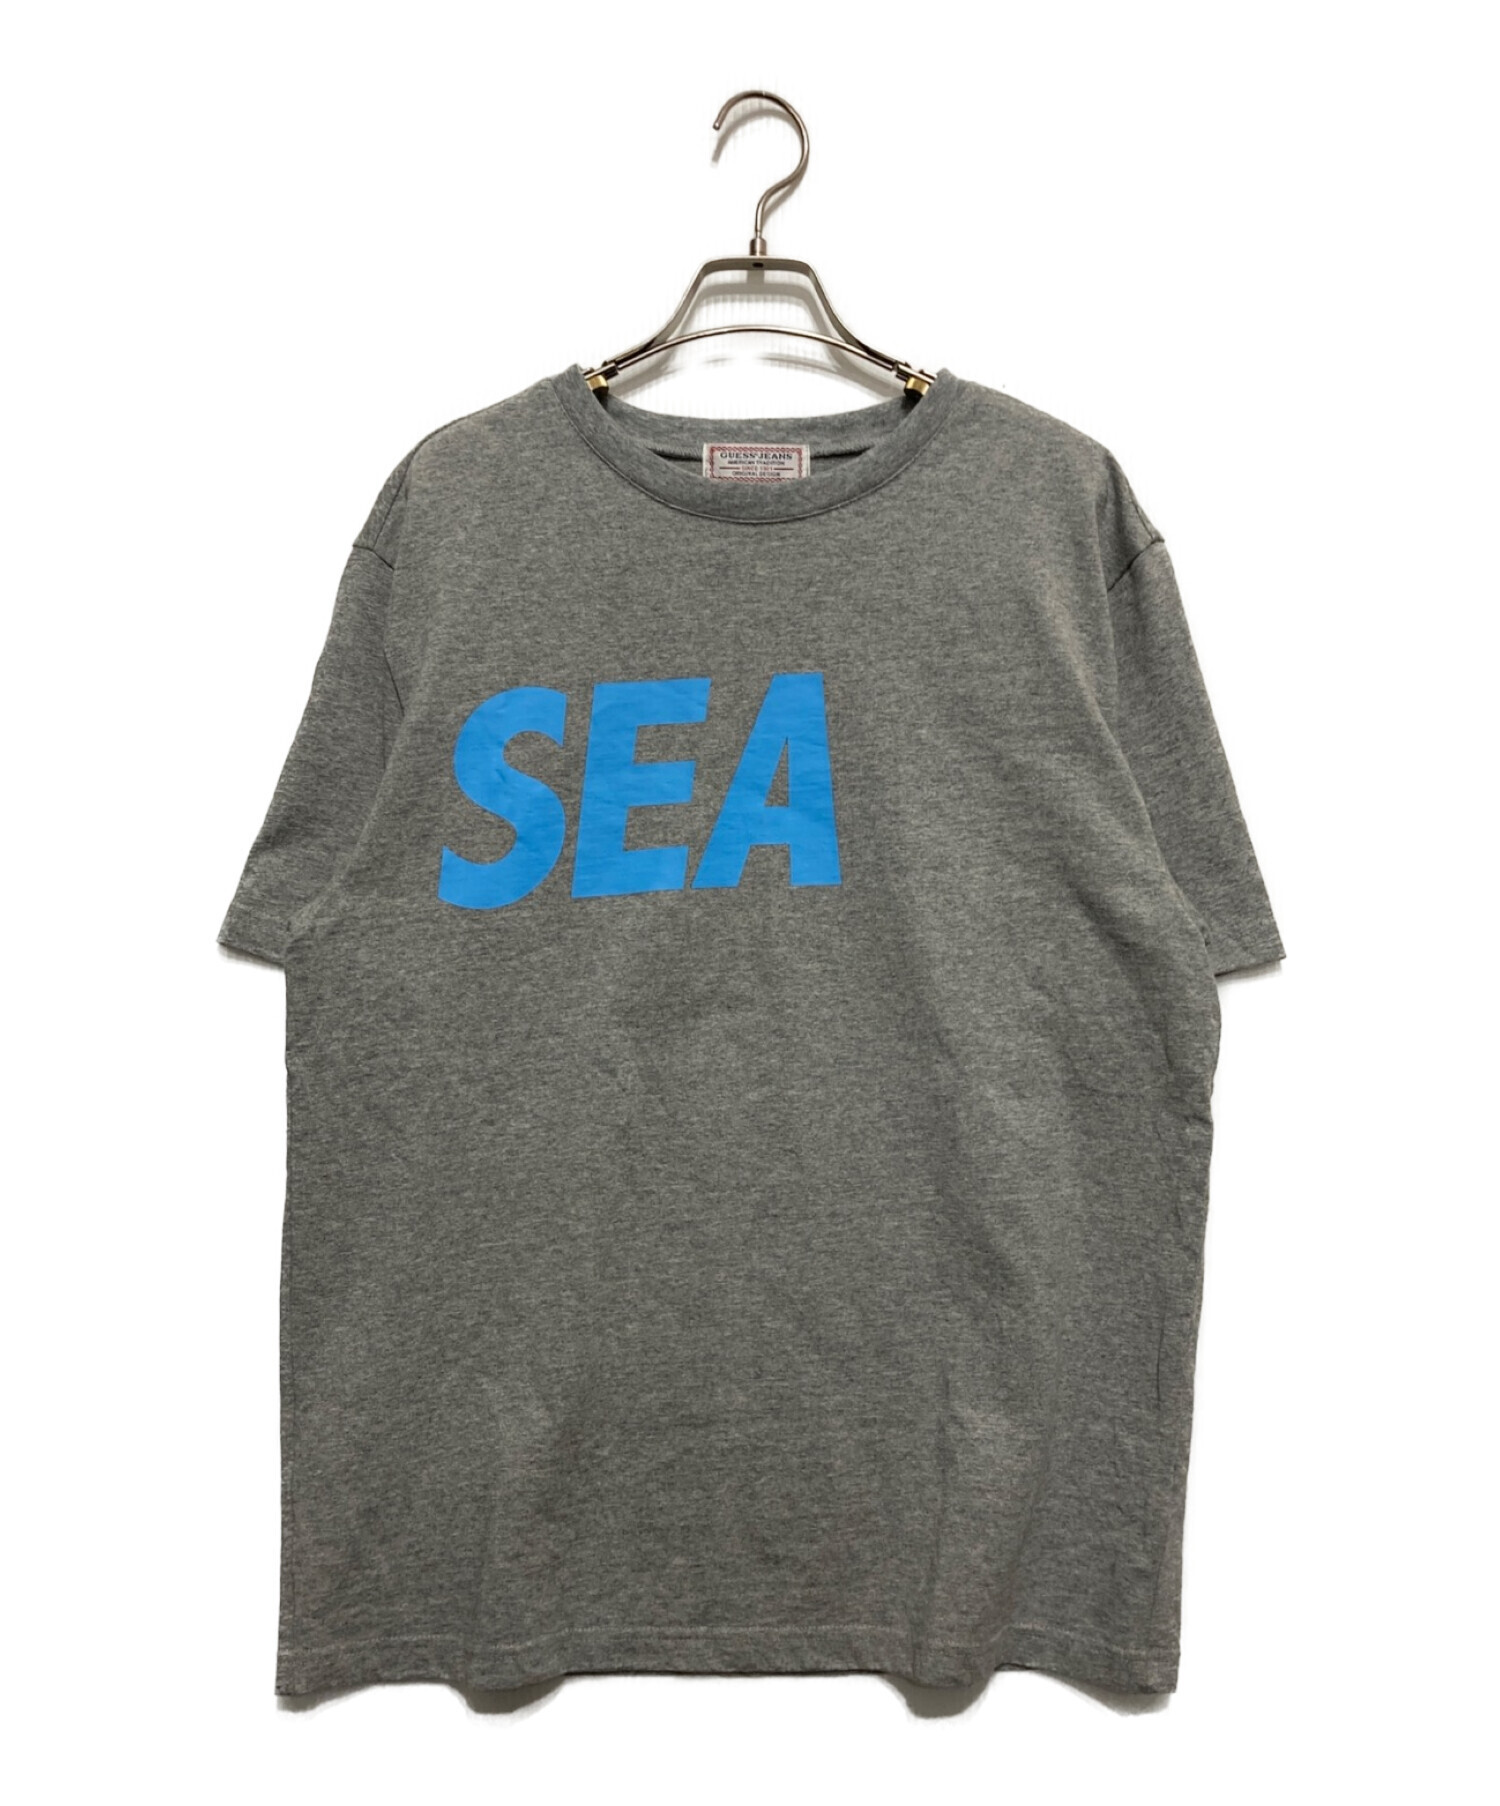 GUESS (ゲス) WIND AND SEA (ウィンダンシー) プリントTシャツ グレー サイズ:S